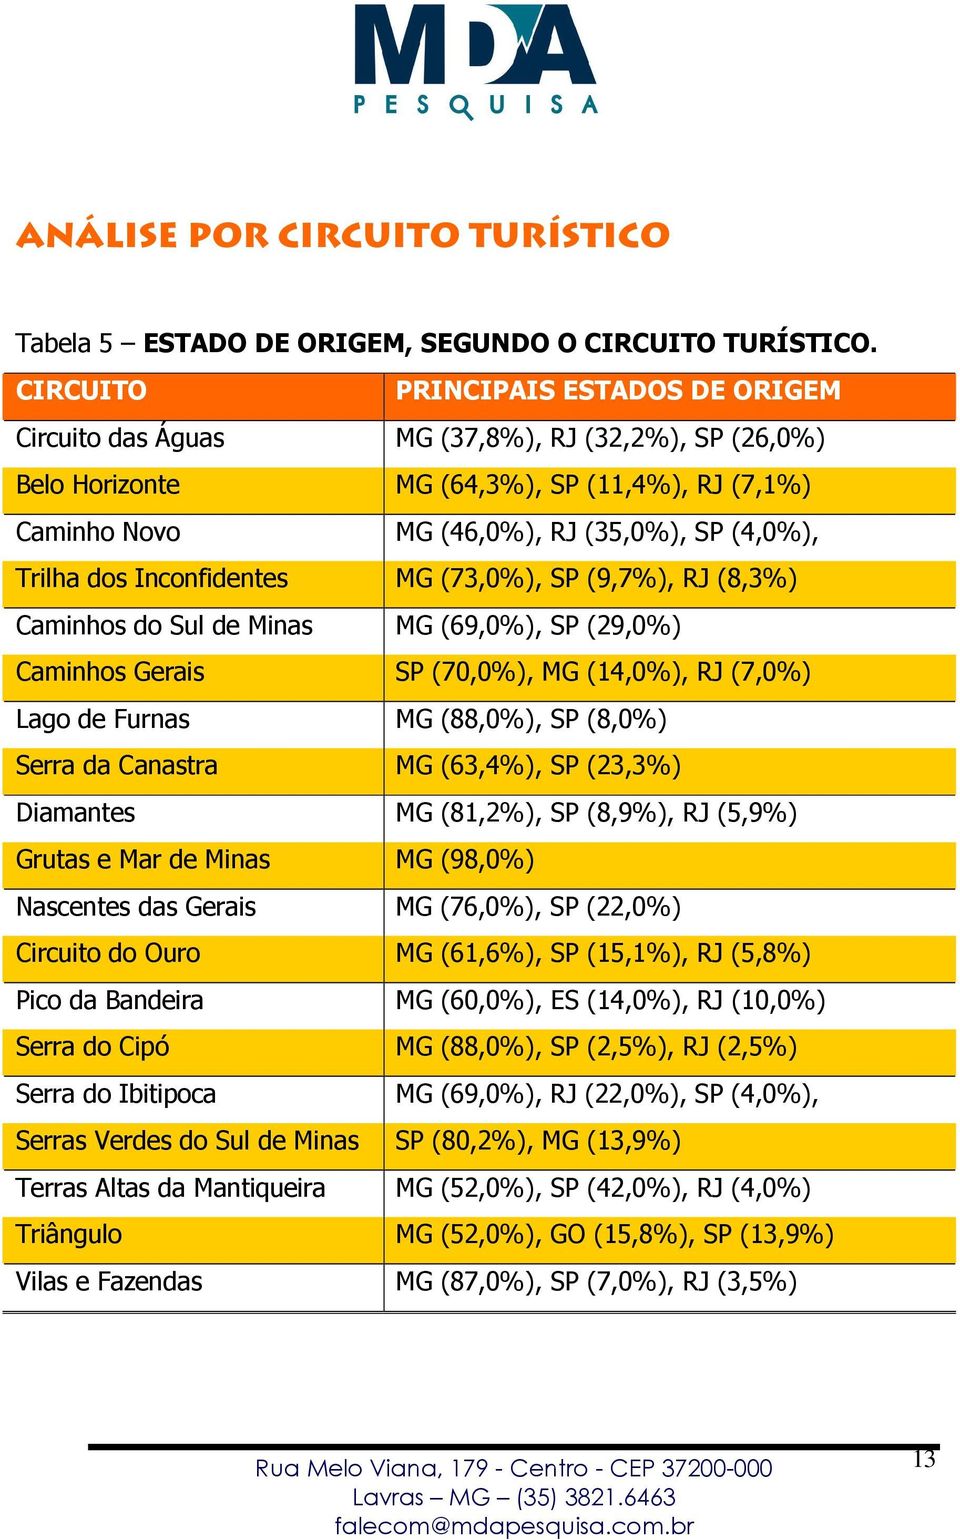 Inconfidentes MG (73,0%), SP (9,7%), RJ (8,3%) Caminhos do Sul de Minas MG (69,0%), SP (29,0%) Caminhos Gerais SP (70,0%), MG (14,0%), RJ (7,0%) Lago de Furnas MG (88,0%), SP (8,0%) Serra da Canastra